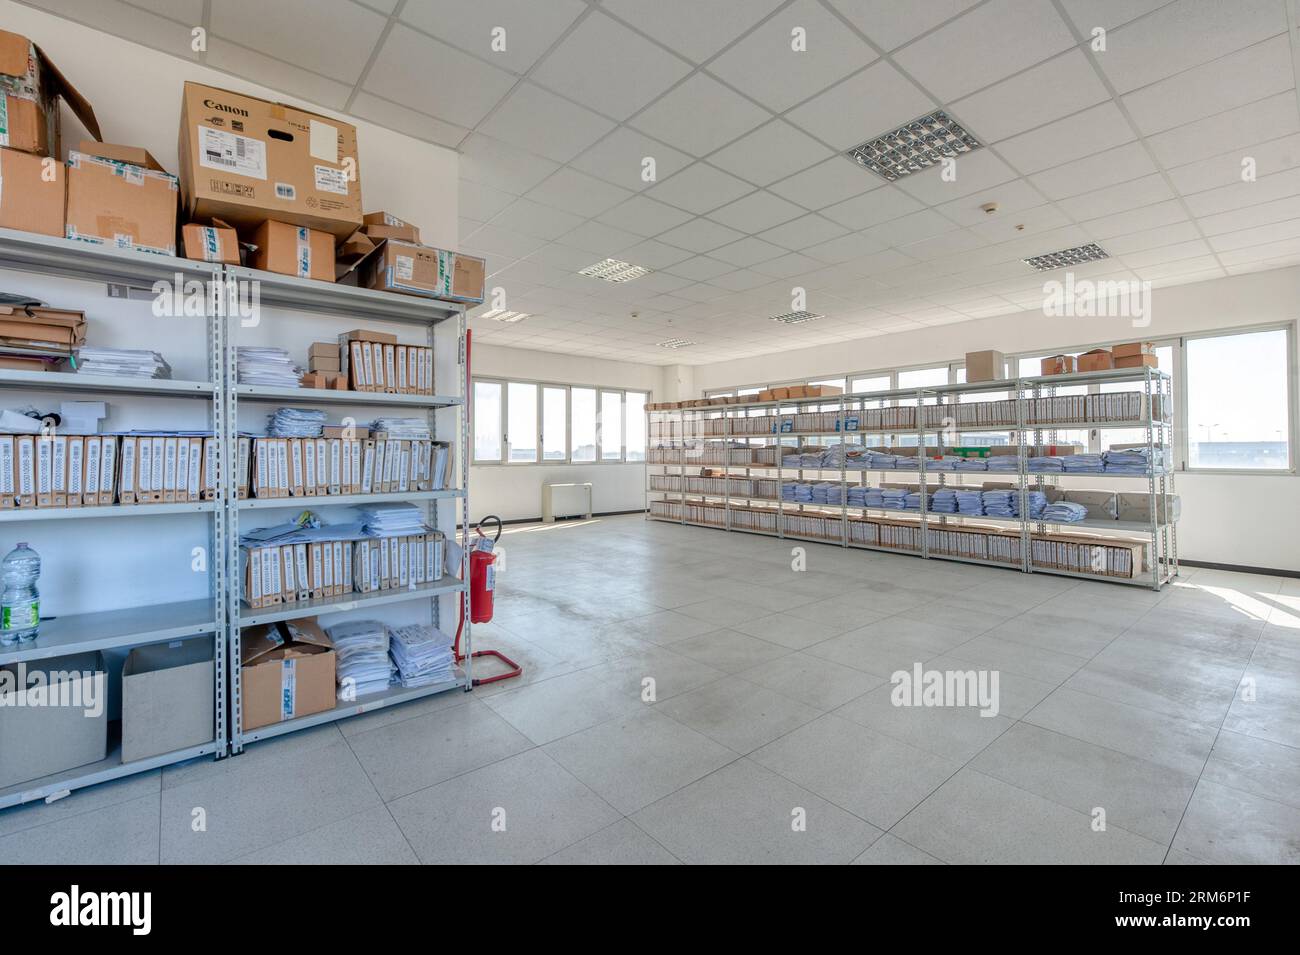 Archivraum in einem Industriegebäude Stockfoto